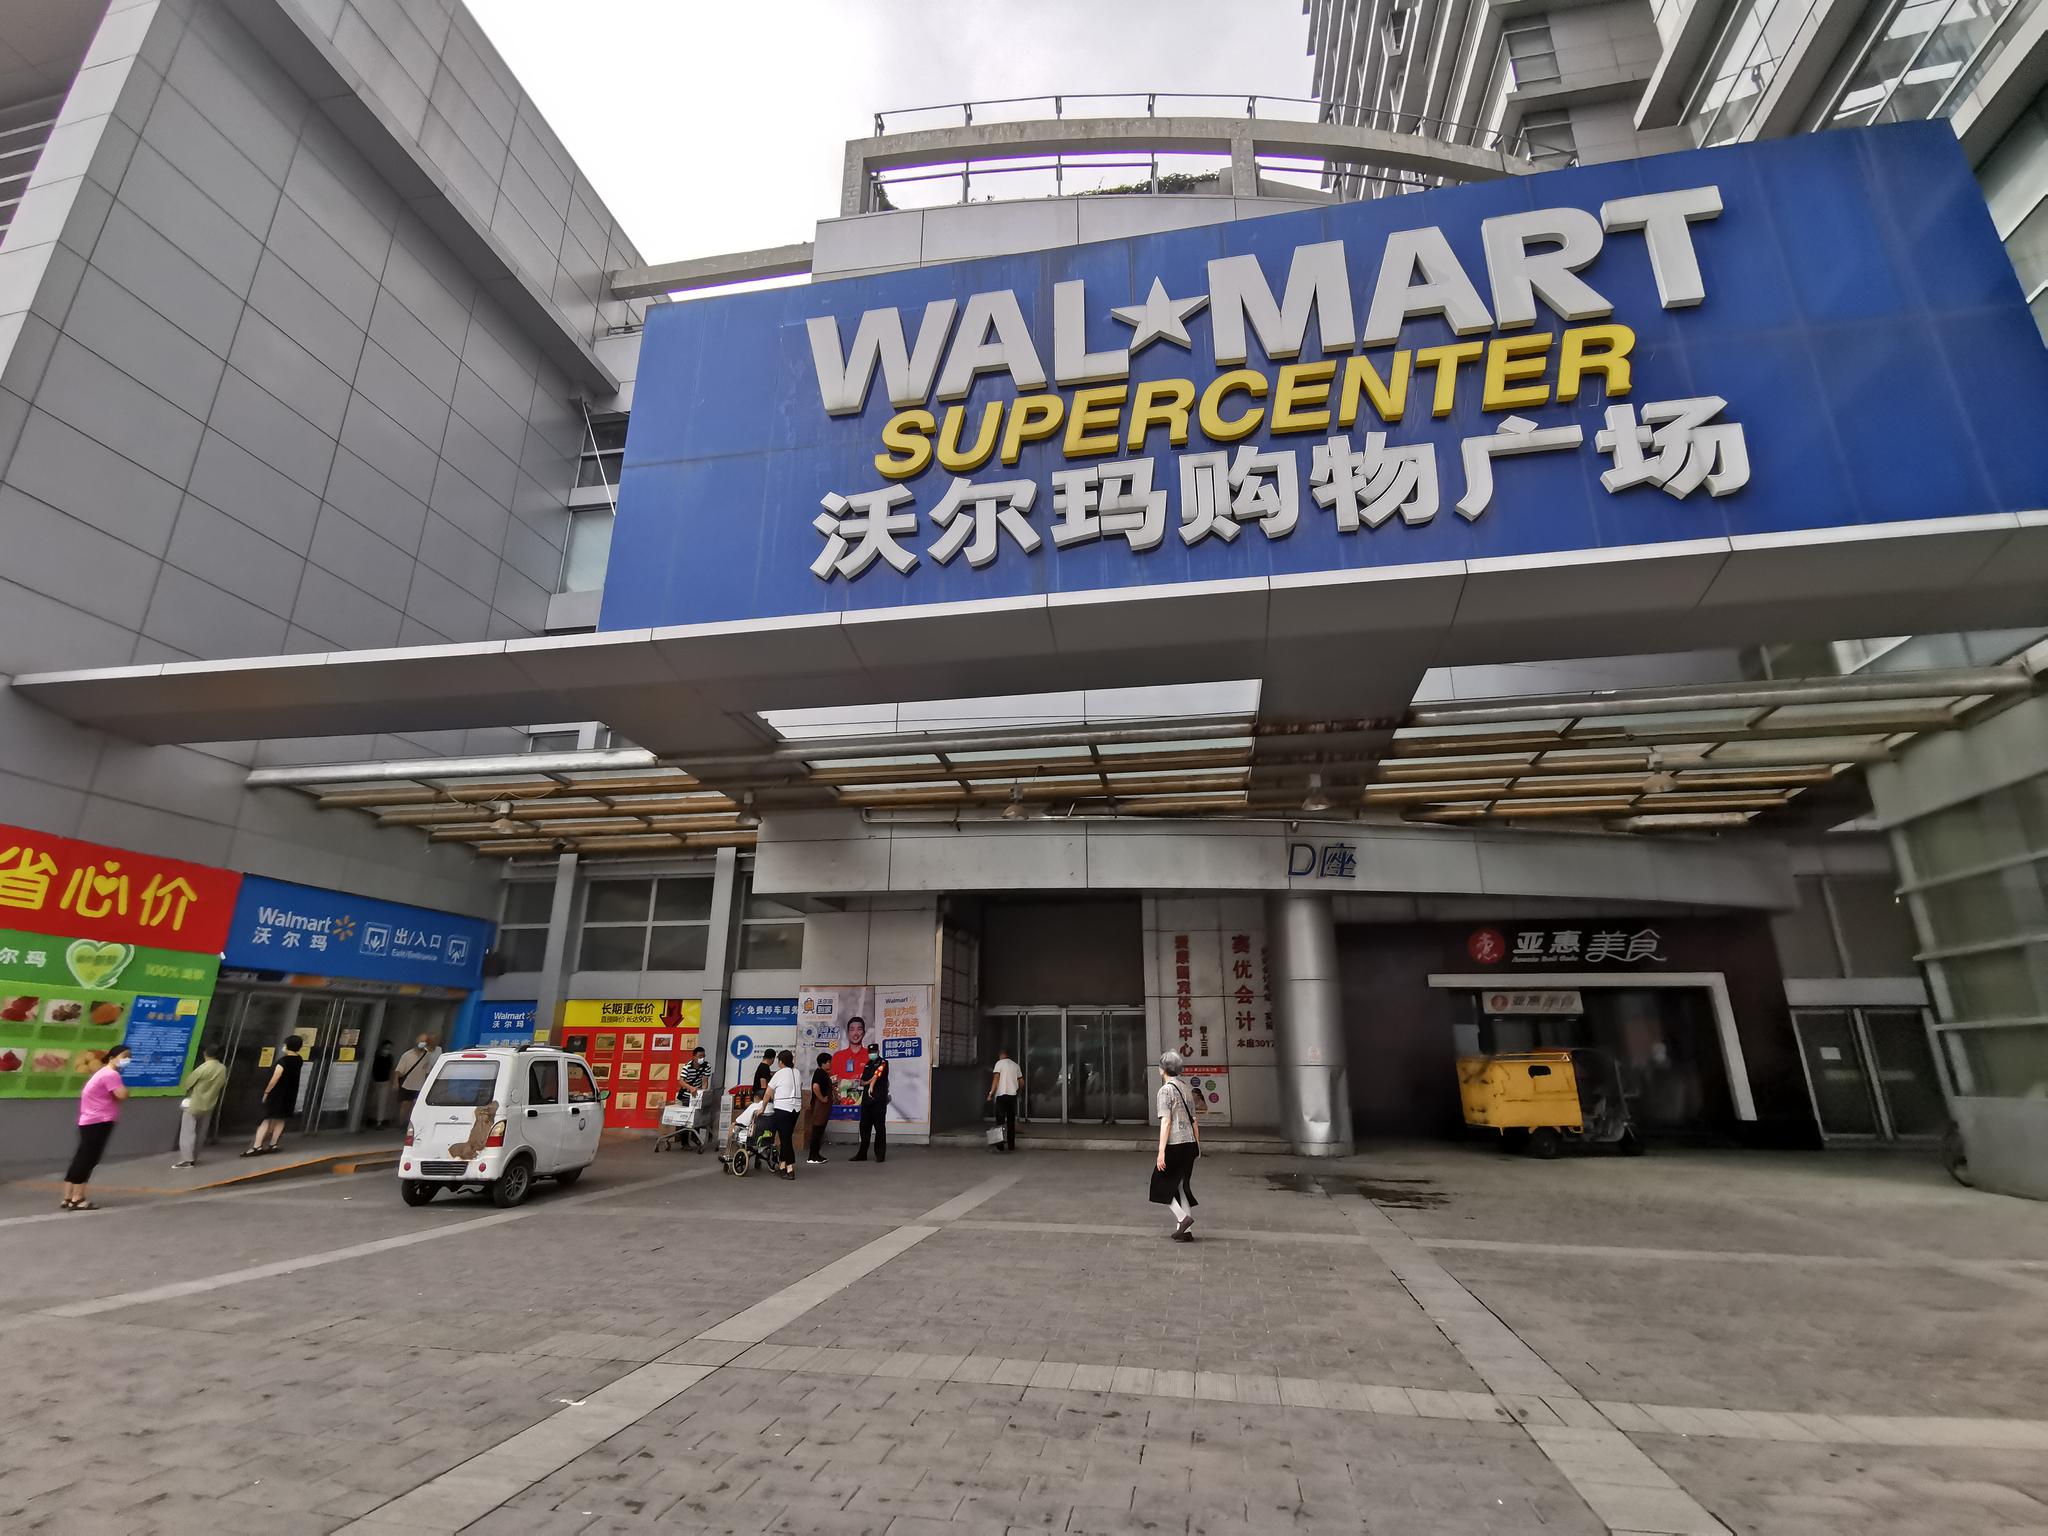 新京报讯(记者 欧阳晓娟)"这家沃尔玛是我对北京大超市最初的印象,就